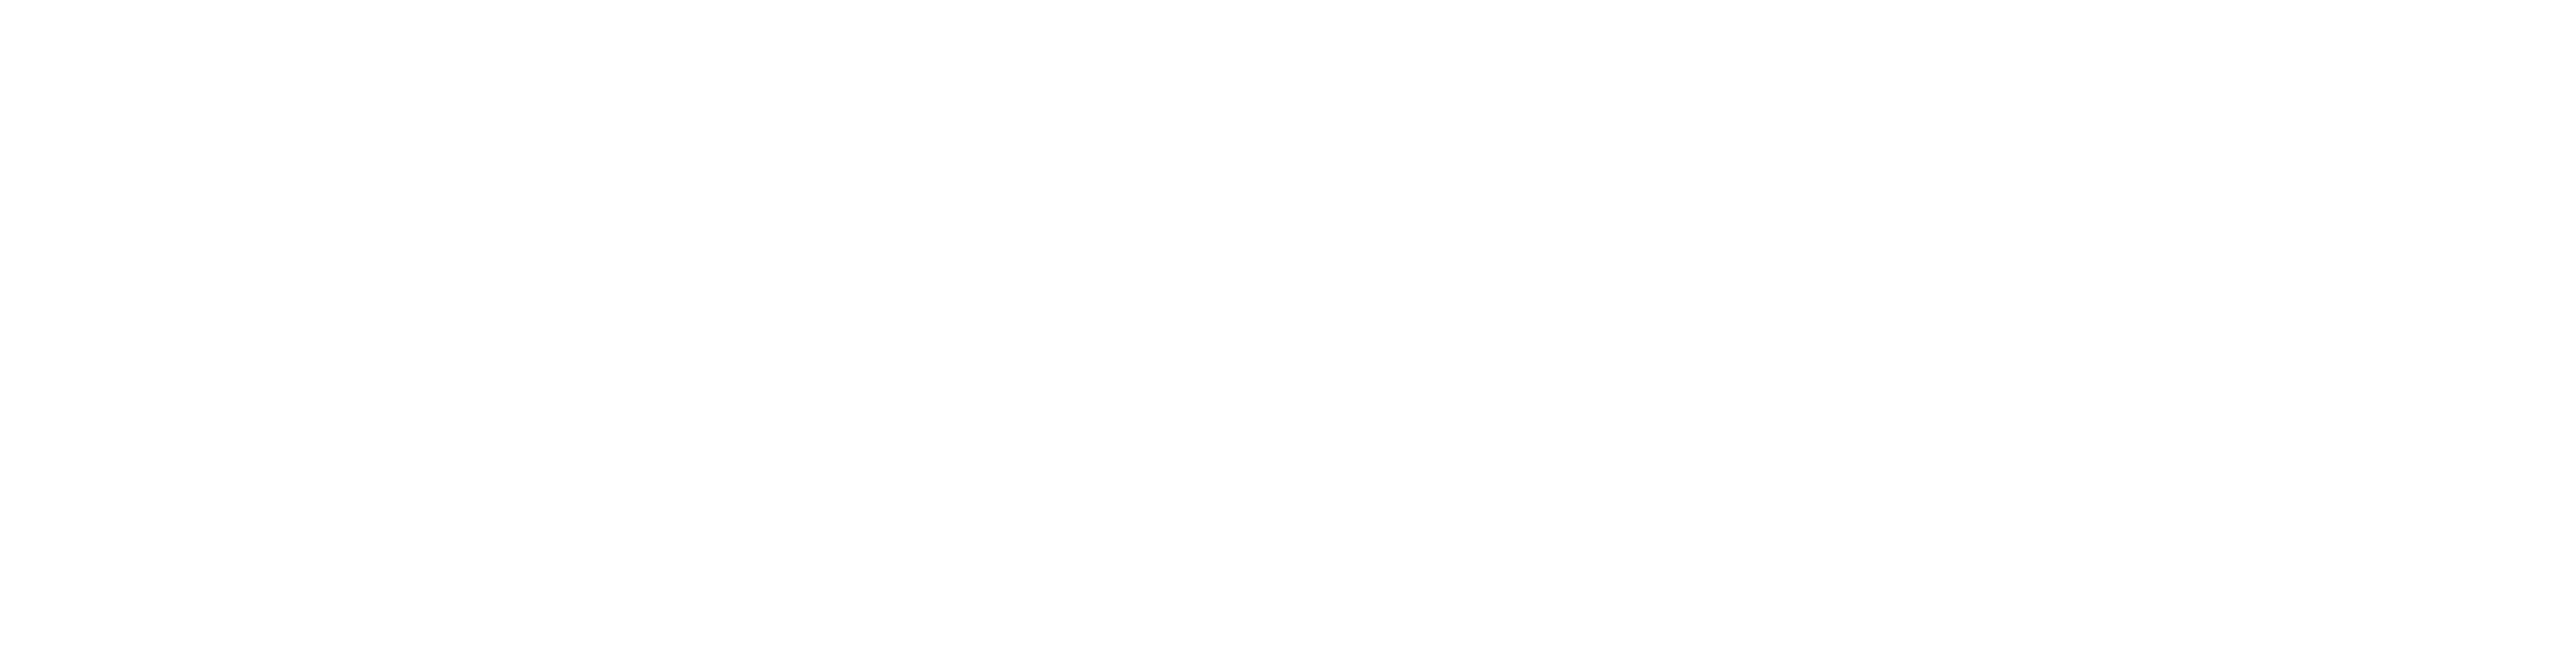 star wars battlefront font